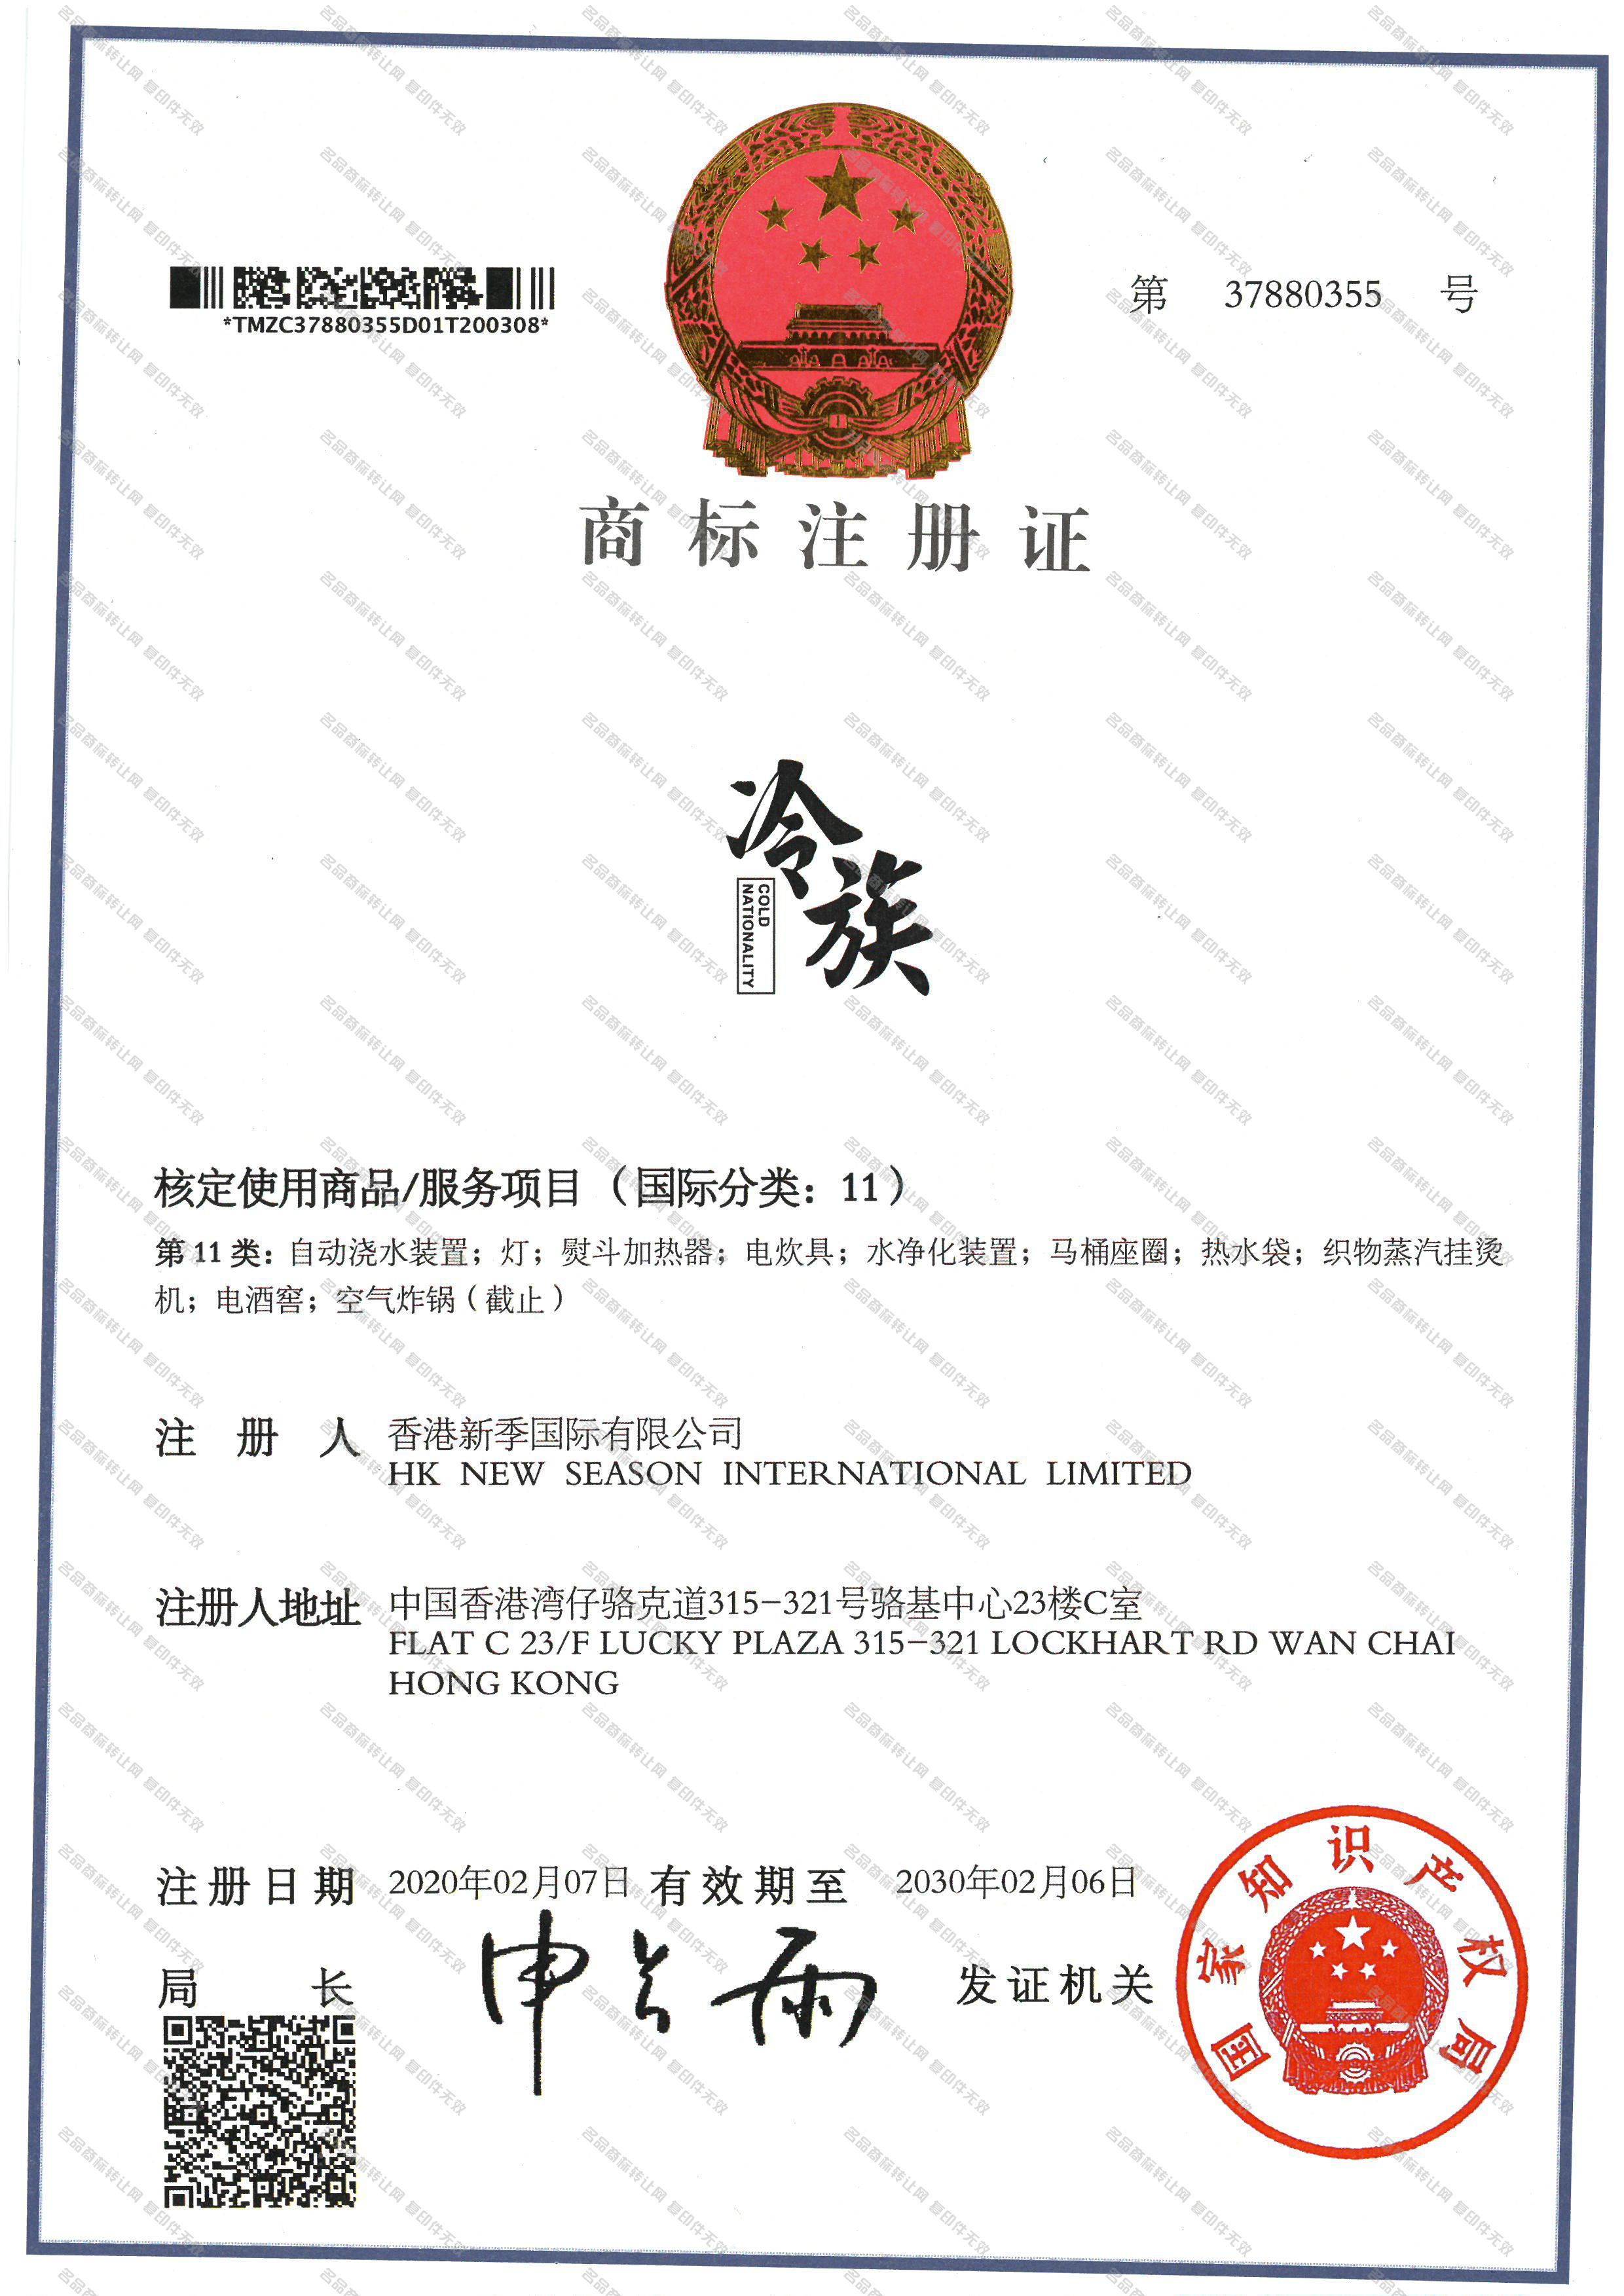 冷族 COLD NATIONALITY注册证